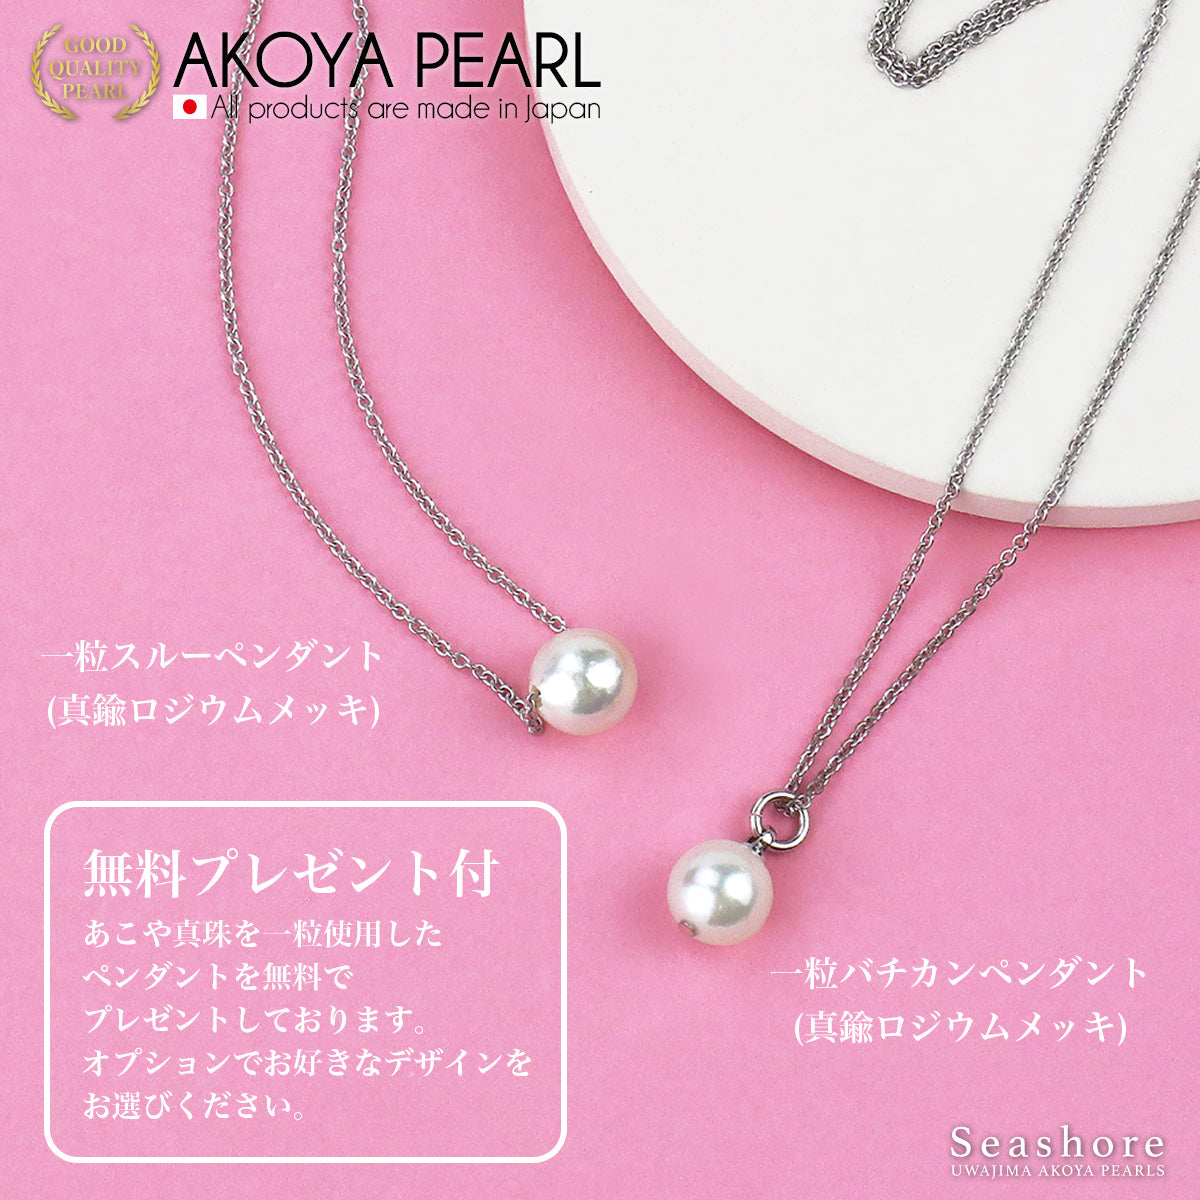 Akoya 珍珠正装项链 2 件套 [7.5-8.0 毫米]（含耳环）常规尺寸正装套装，带真品证书和储物盒